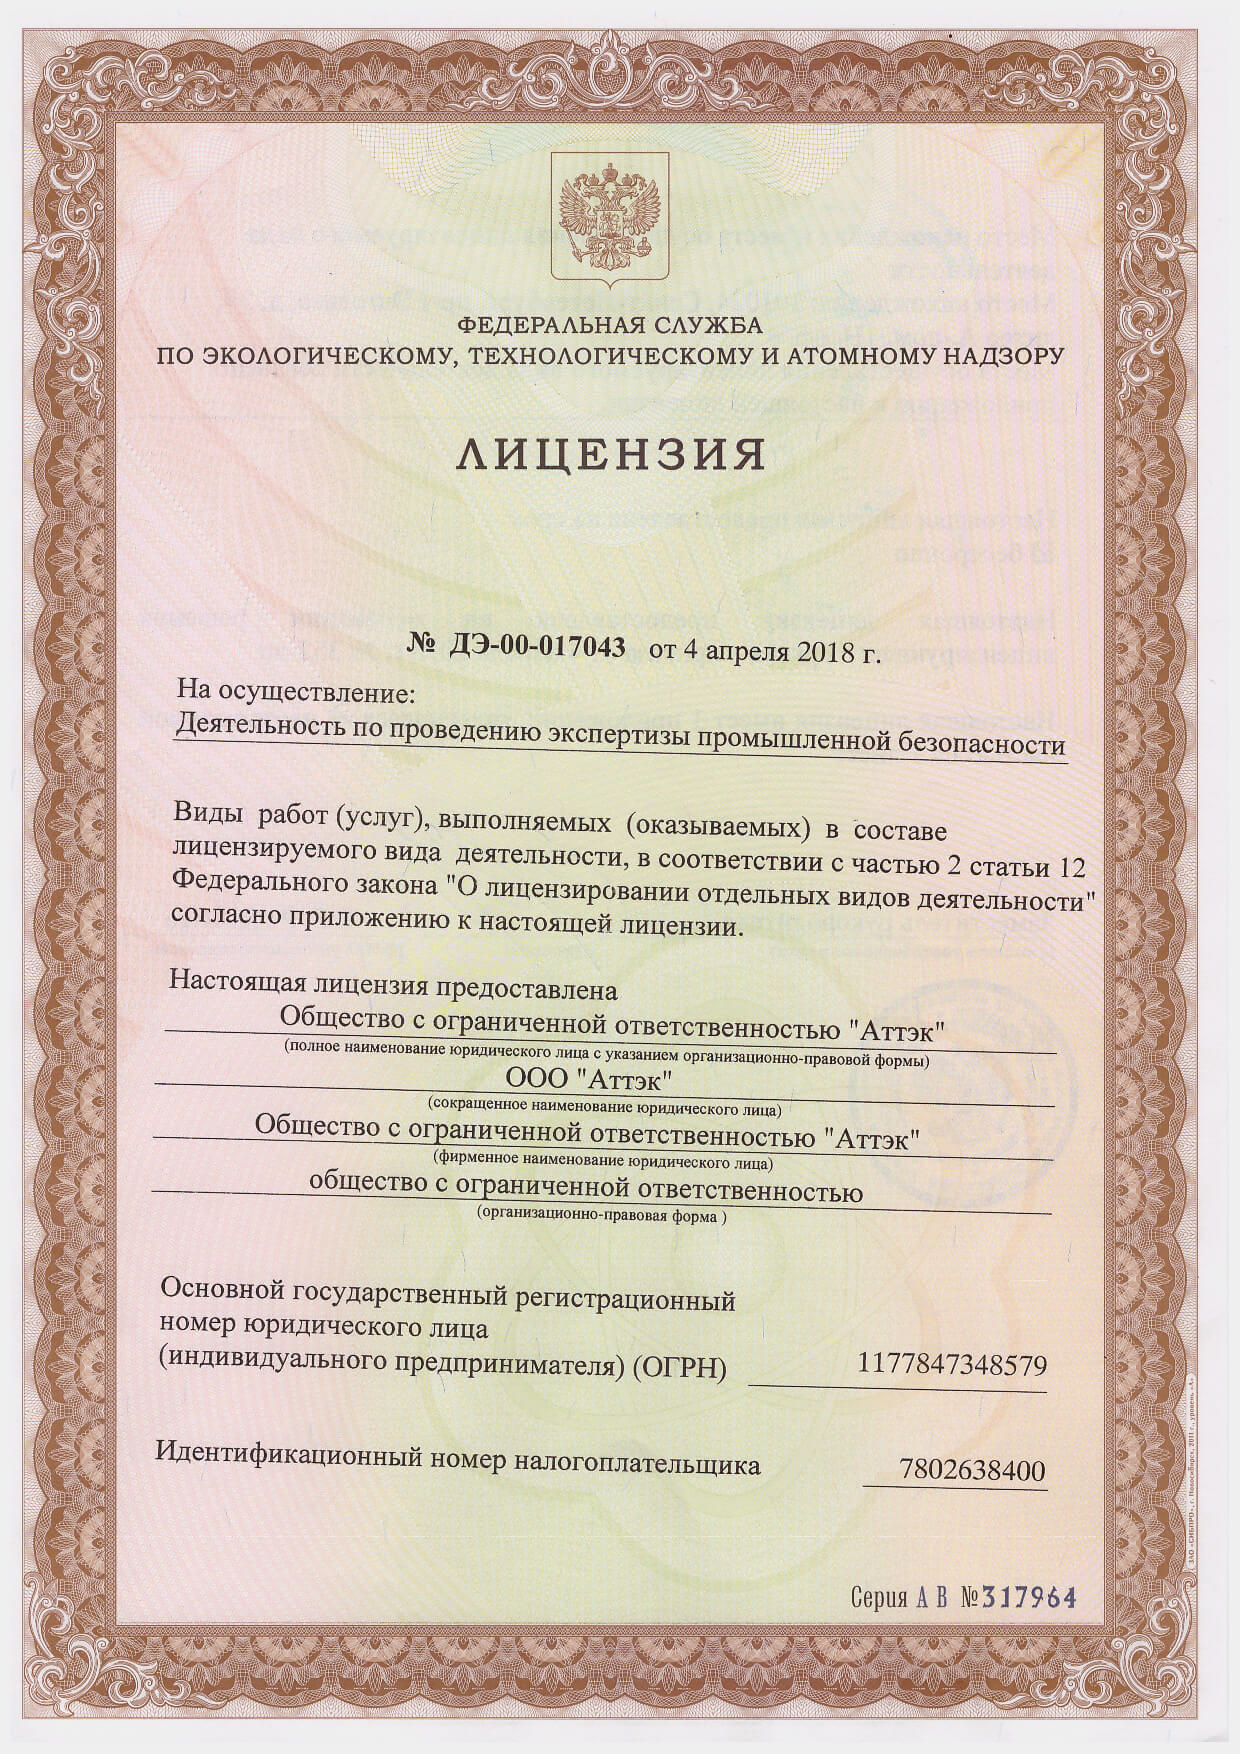 Лицензионный реестр опасных производственных объектов Ростехнадзора